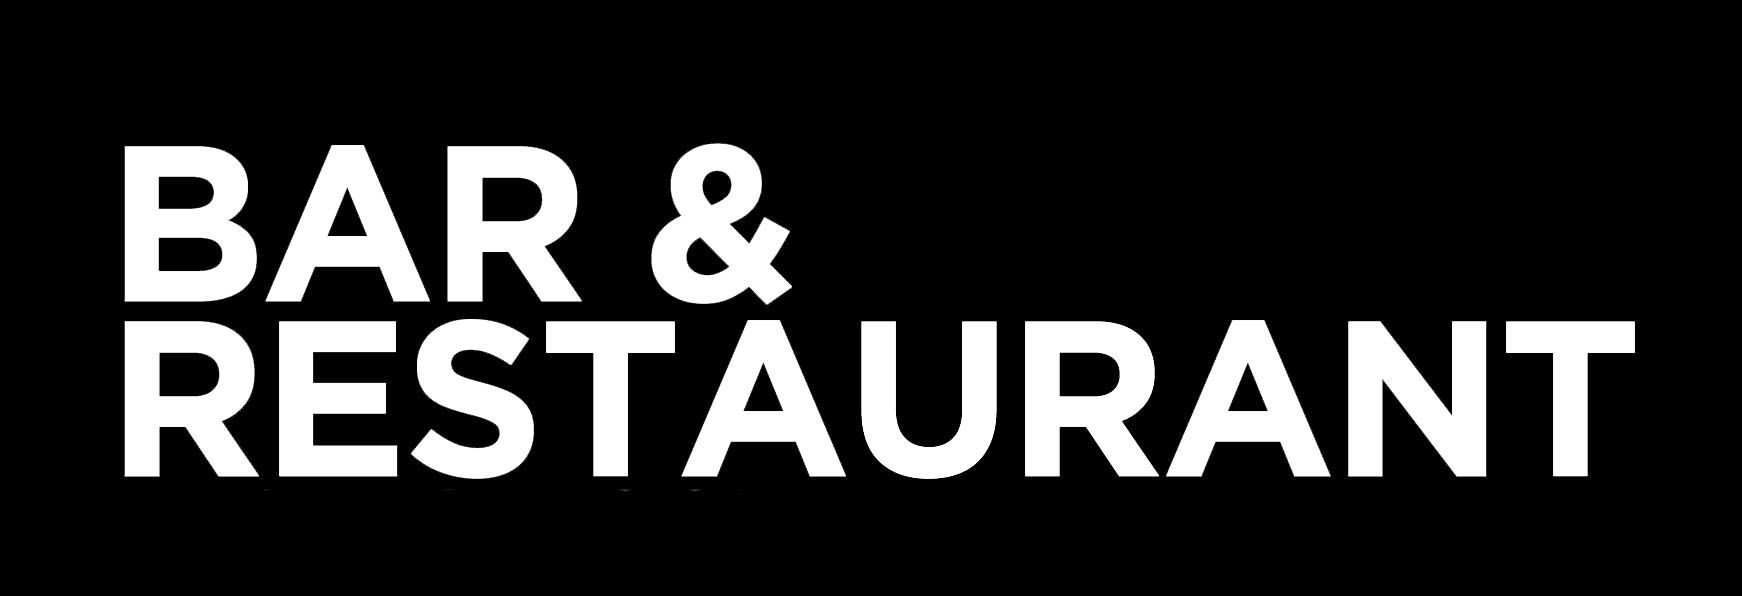 Bar and Restaurant logo white on black background